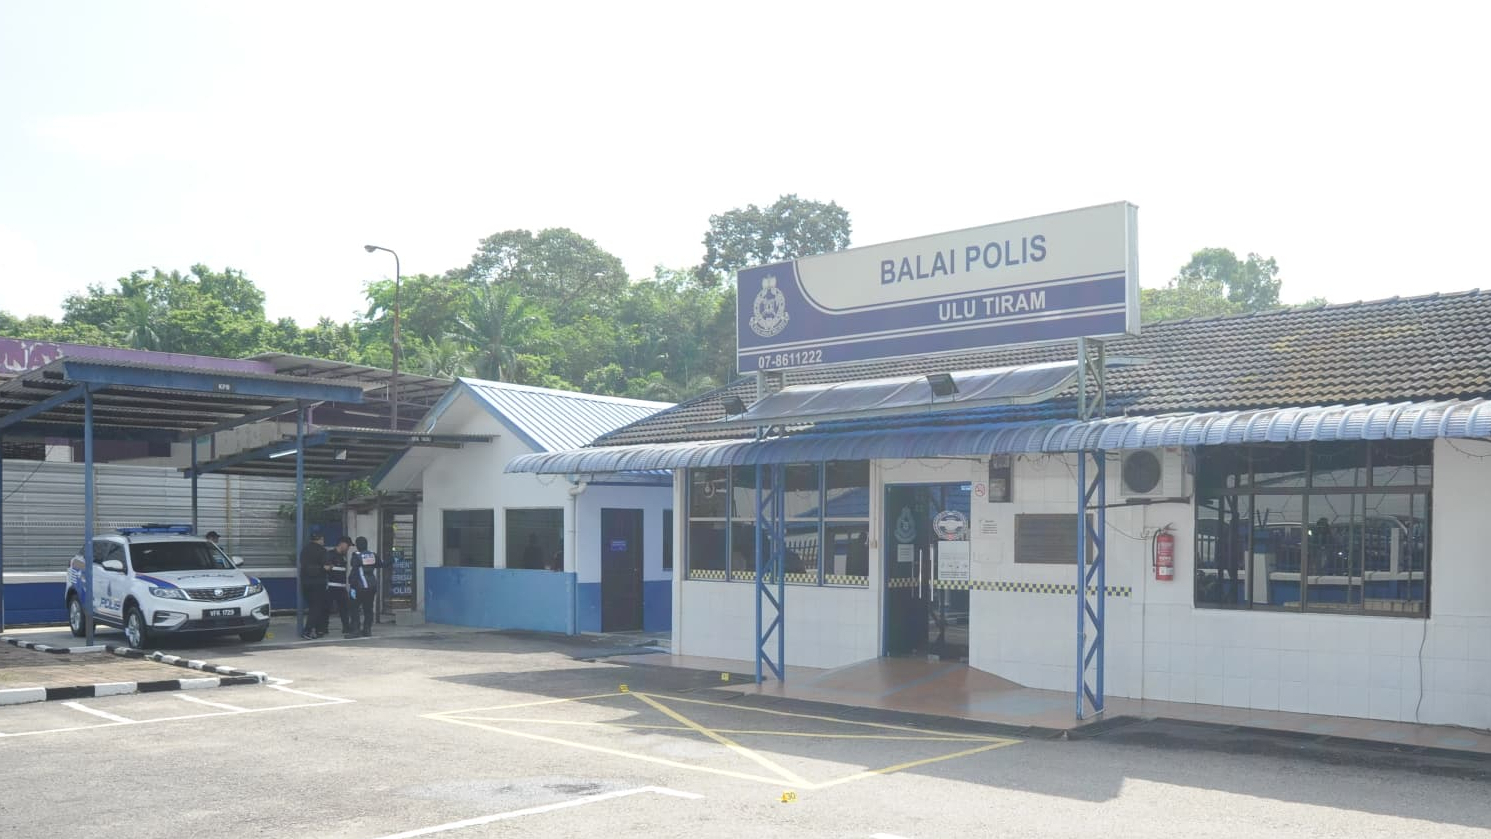 Insiden Balai Polis Ulu Tiram: 5 ahli keluarga suspek tiba di mahkamah, dikawal ketat 30 anggota